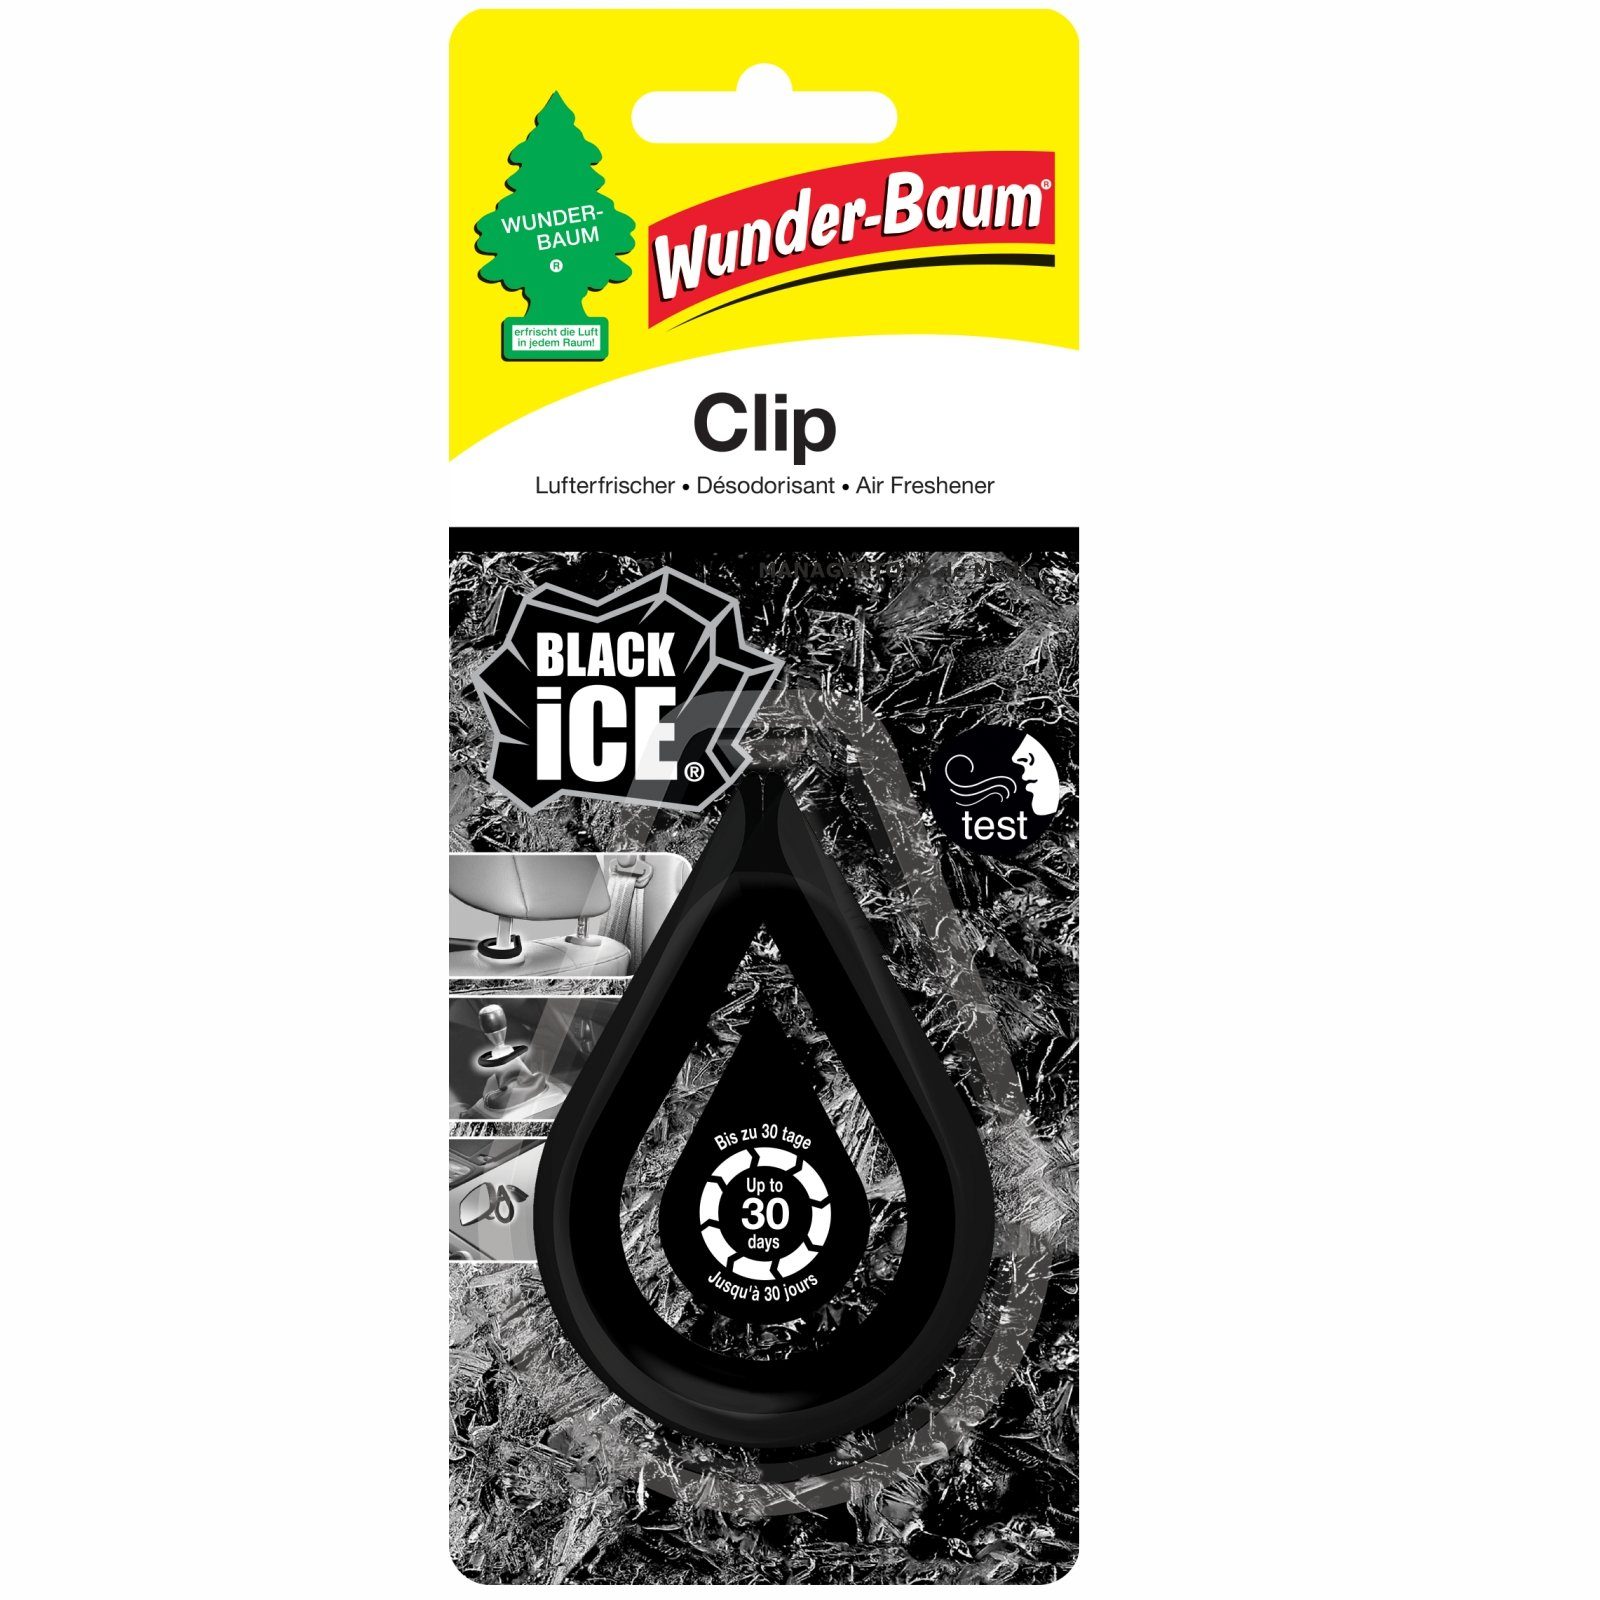 Kunstbaum Clip Wunderbaum Black Ice Duft Lufterfrischer, Wunder-Baum